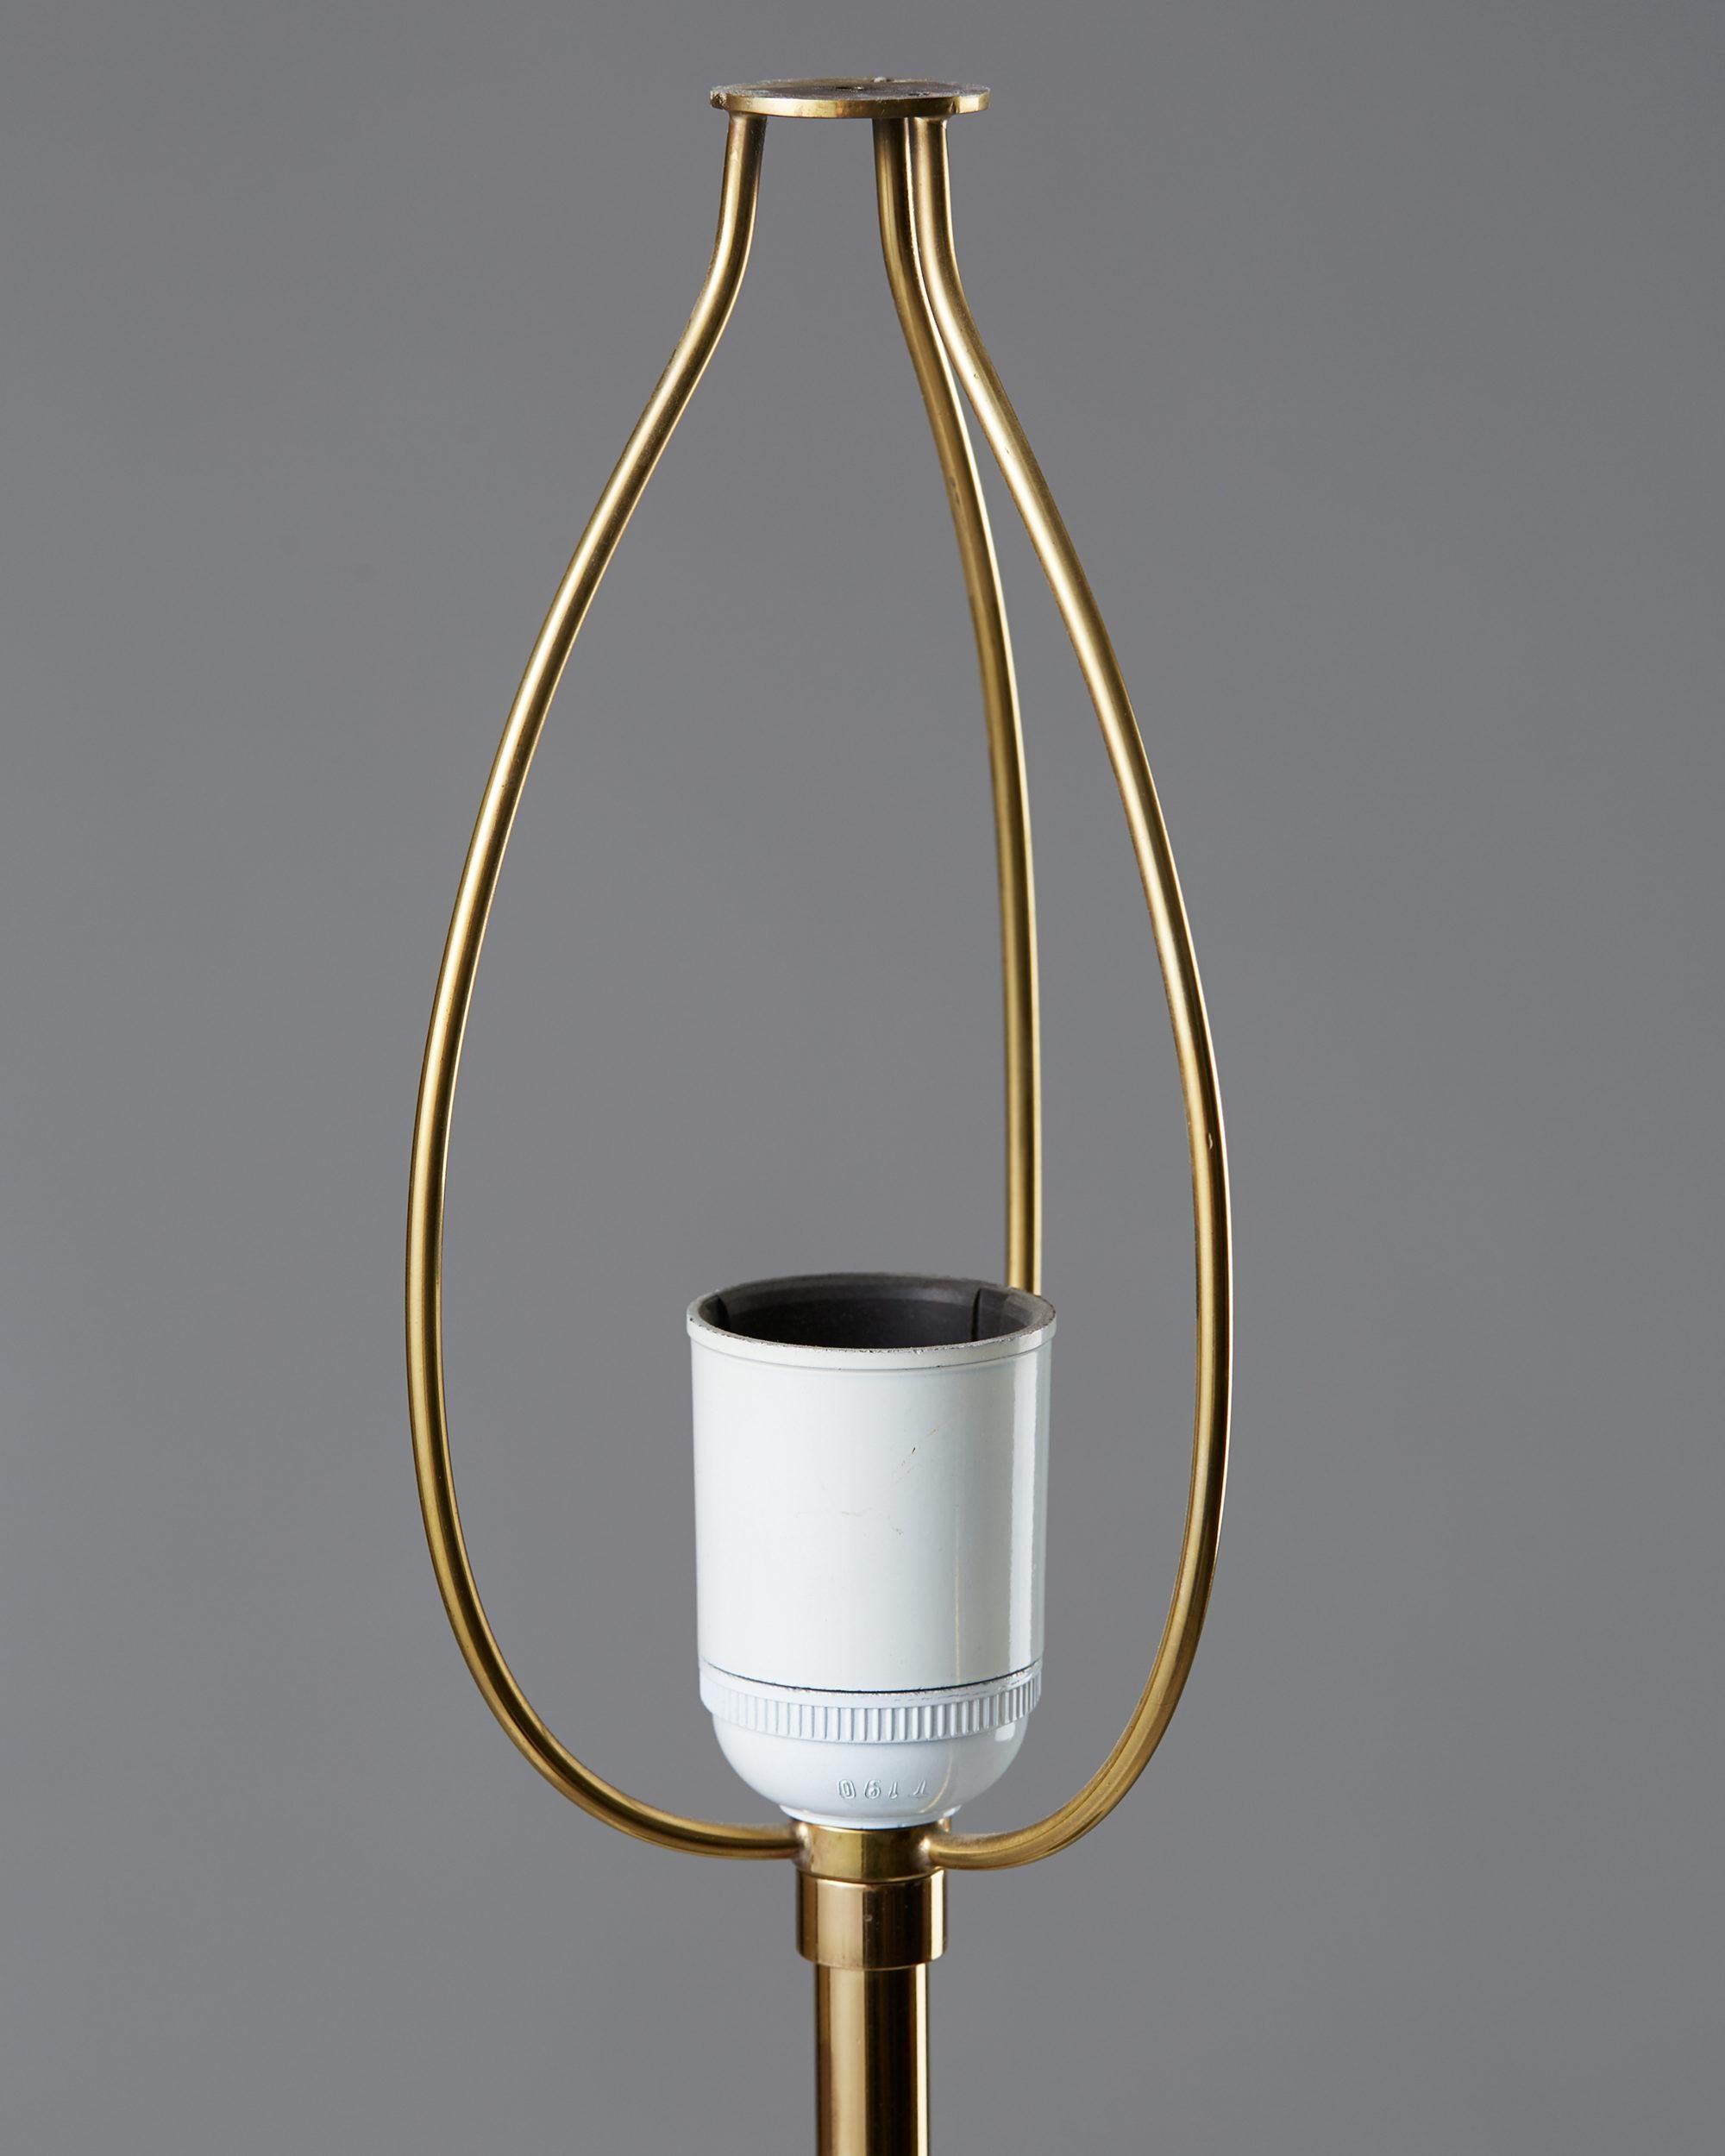 Mid-20th Century Table Lamp Model 2466 Designed by Josef Frank for Svenskt Tenn, Denmark, 1950s